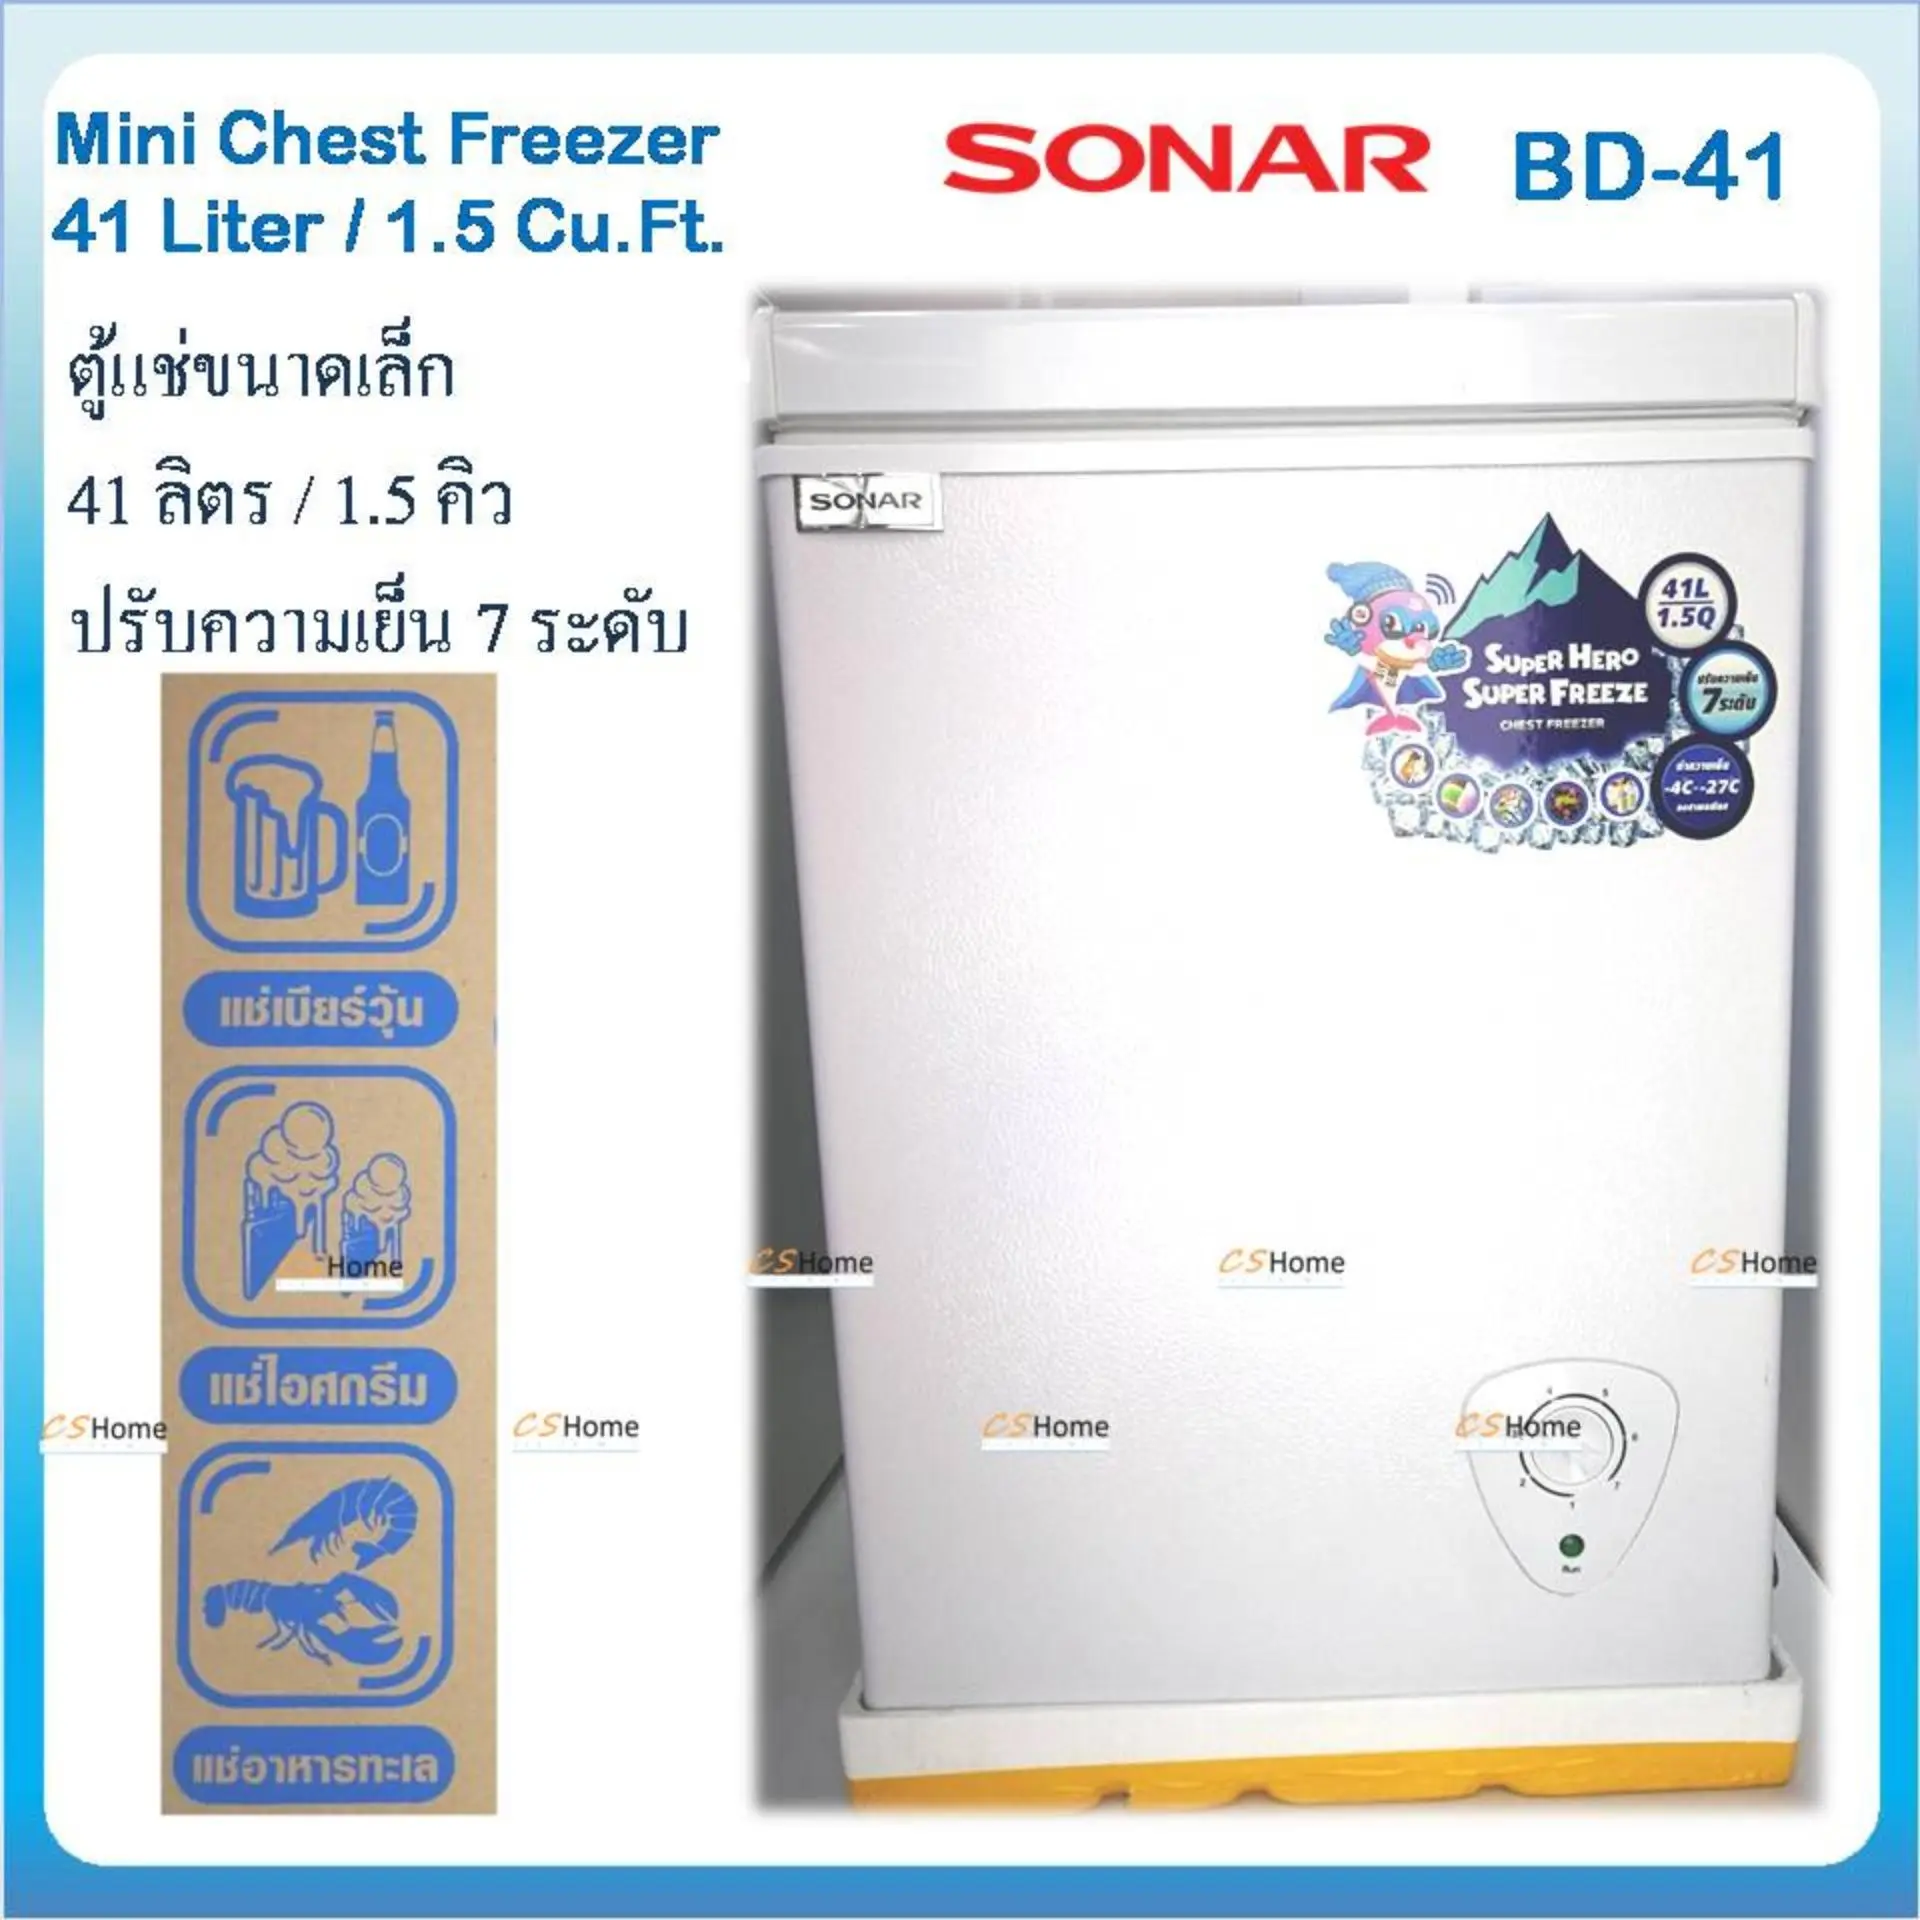 ส่งฟรี SONAR ตู้แช่แข็ง/แช่เย็น CHEST FREEZER ขนาด 41 ลิตร (1.5 คิว) รุ่น BD-41 ประหยัดไฟ เย็นจัด เย็นเร็ว ทำงานเงียบไร้เสียงรบกวน CS Home